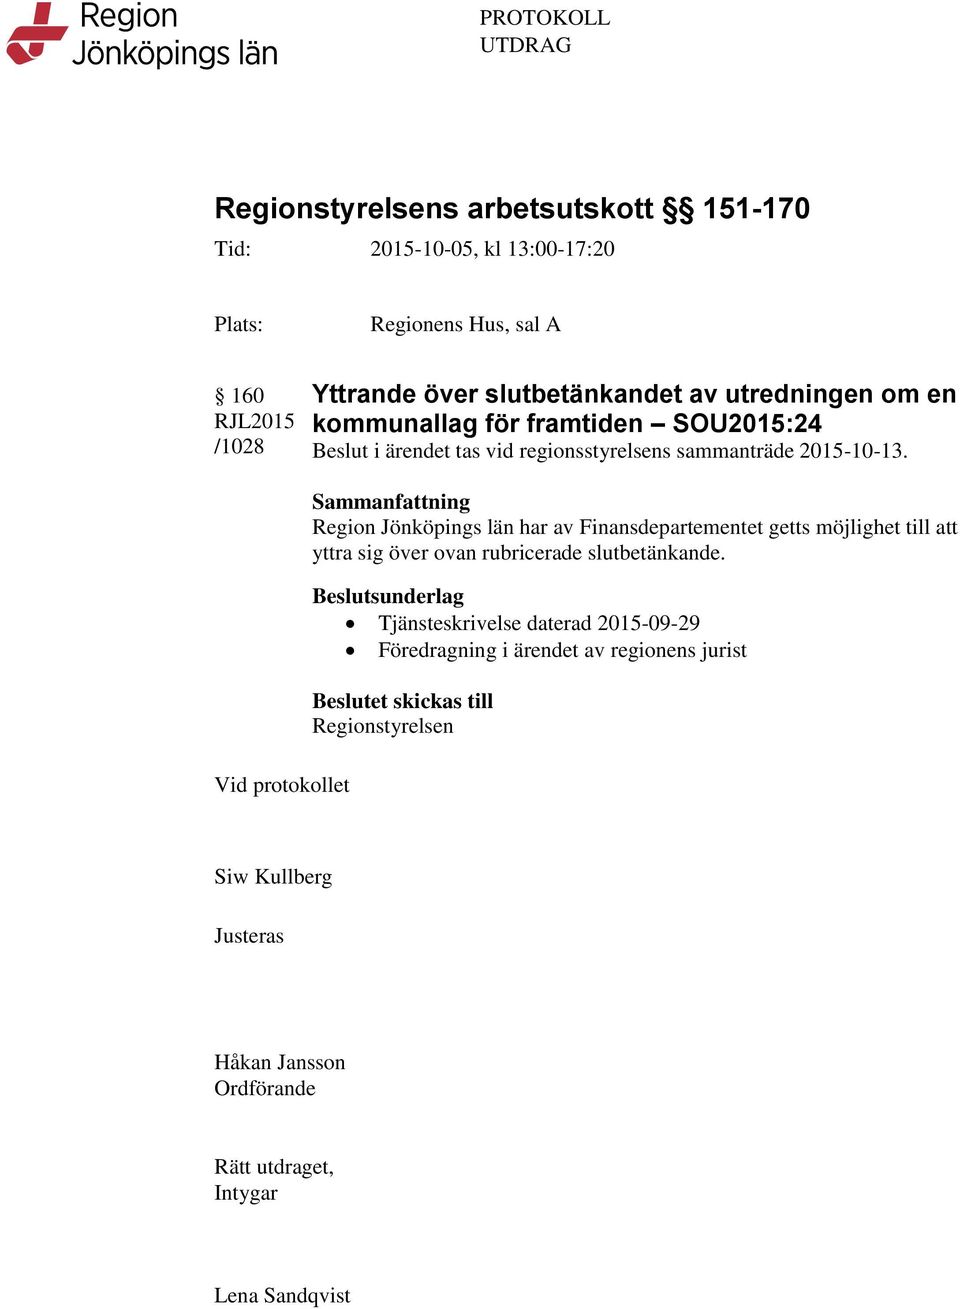 Region Jönköpings län har av Finansdepartementet getts möjlighet till att yttra sig över